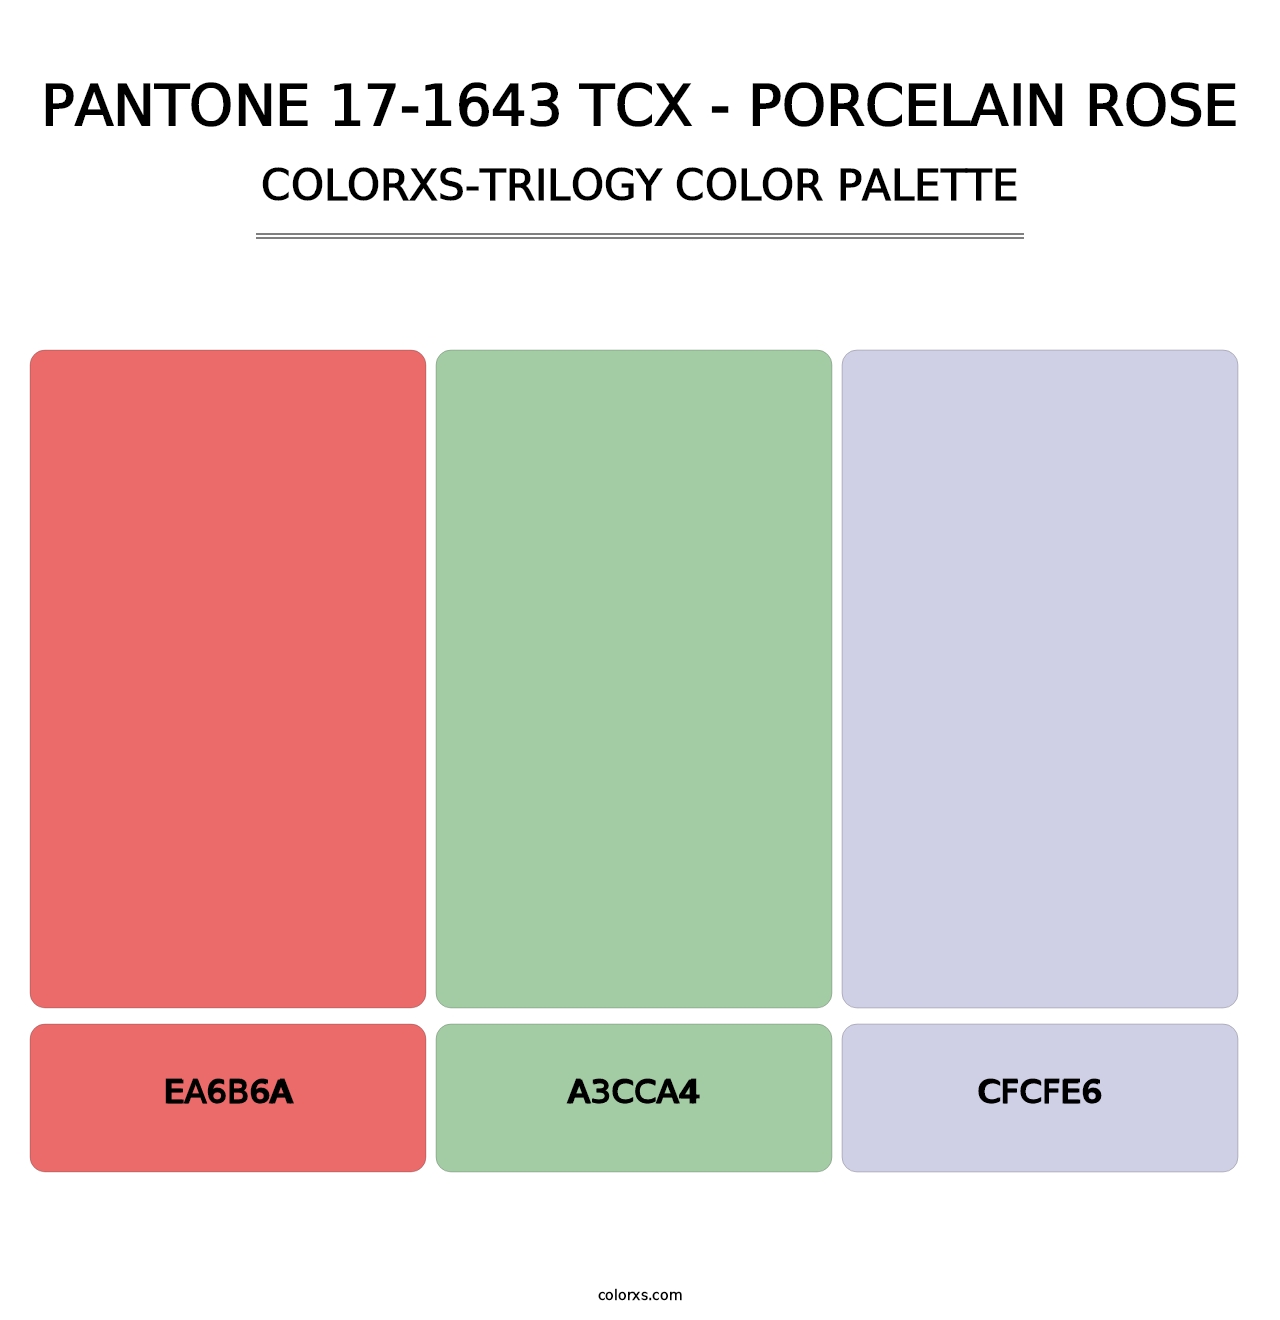 PANTONE 17-1643 TCX - Porcelain Rose - Colorxs Trilogy Palette